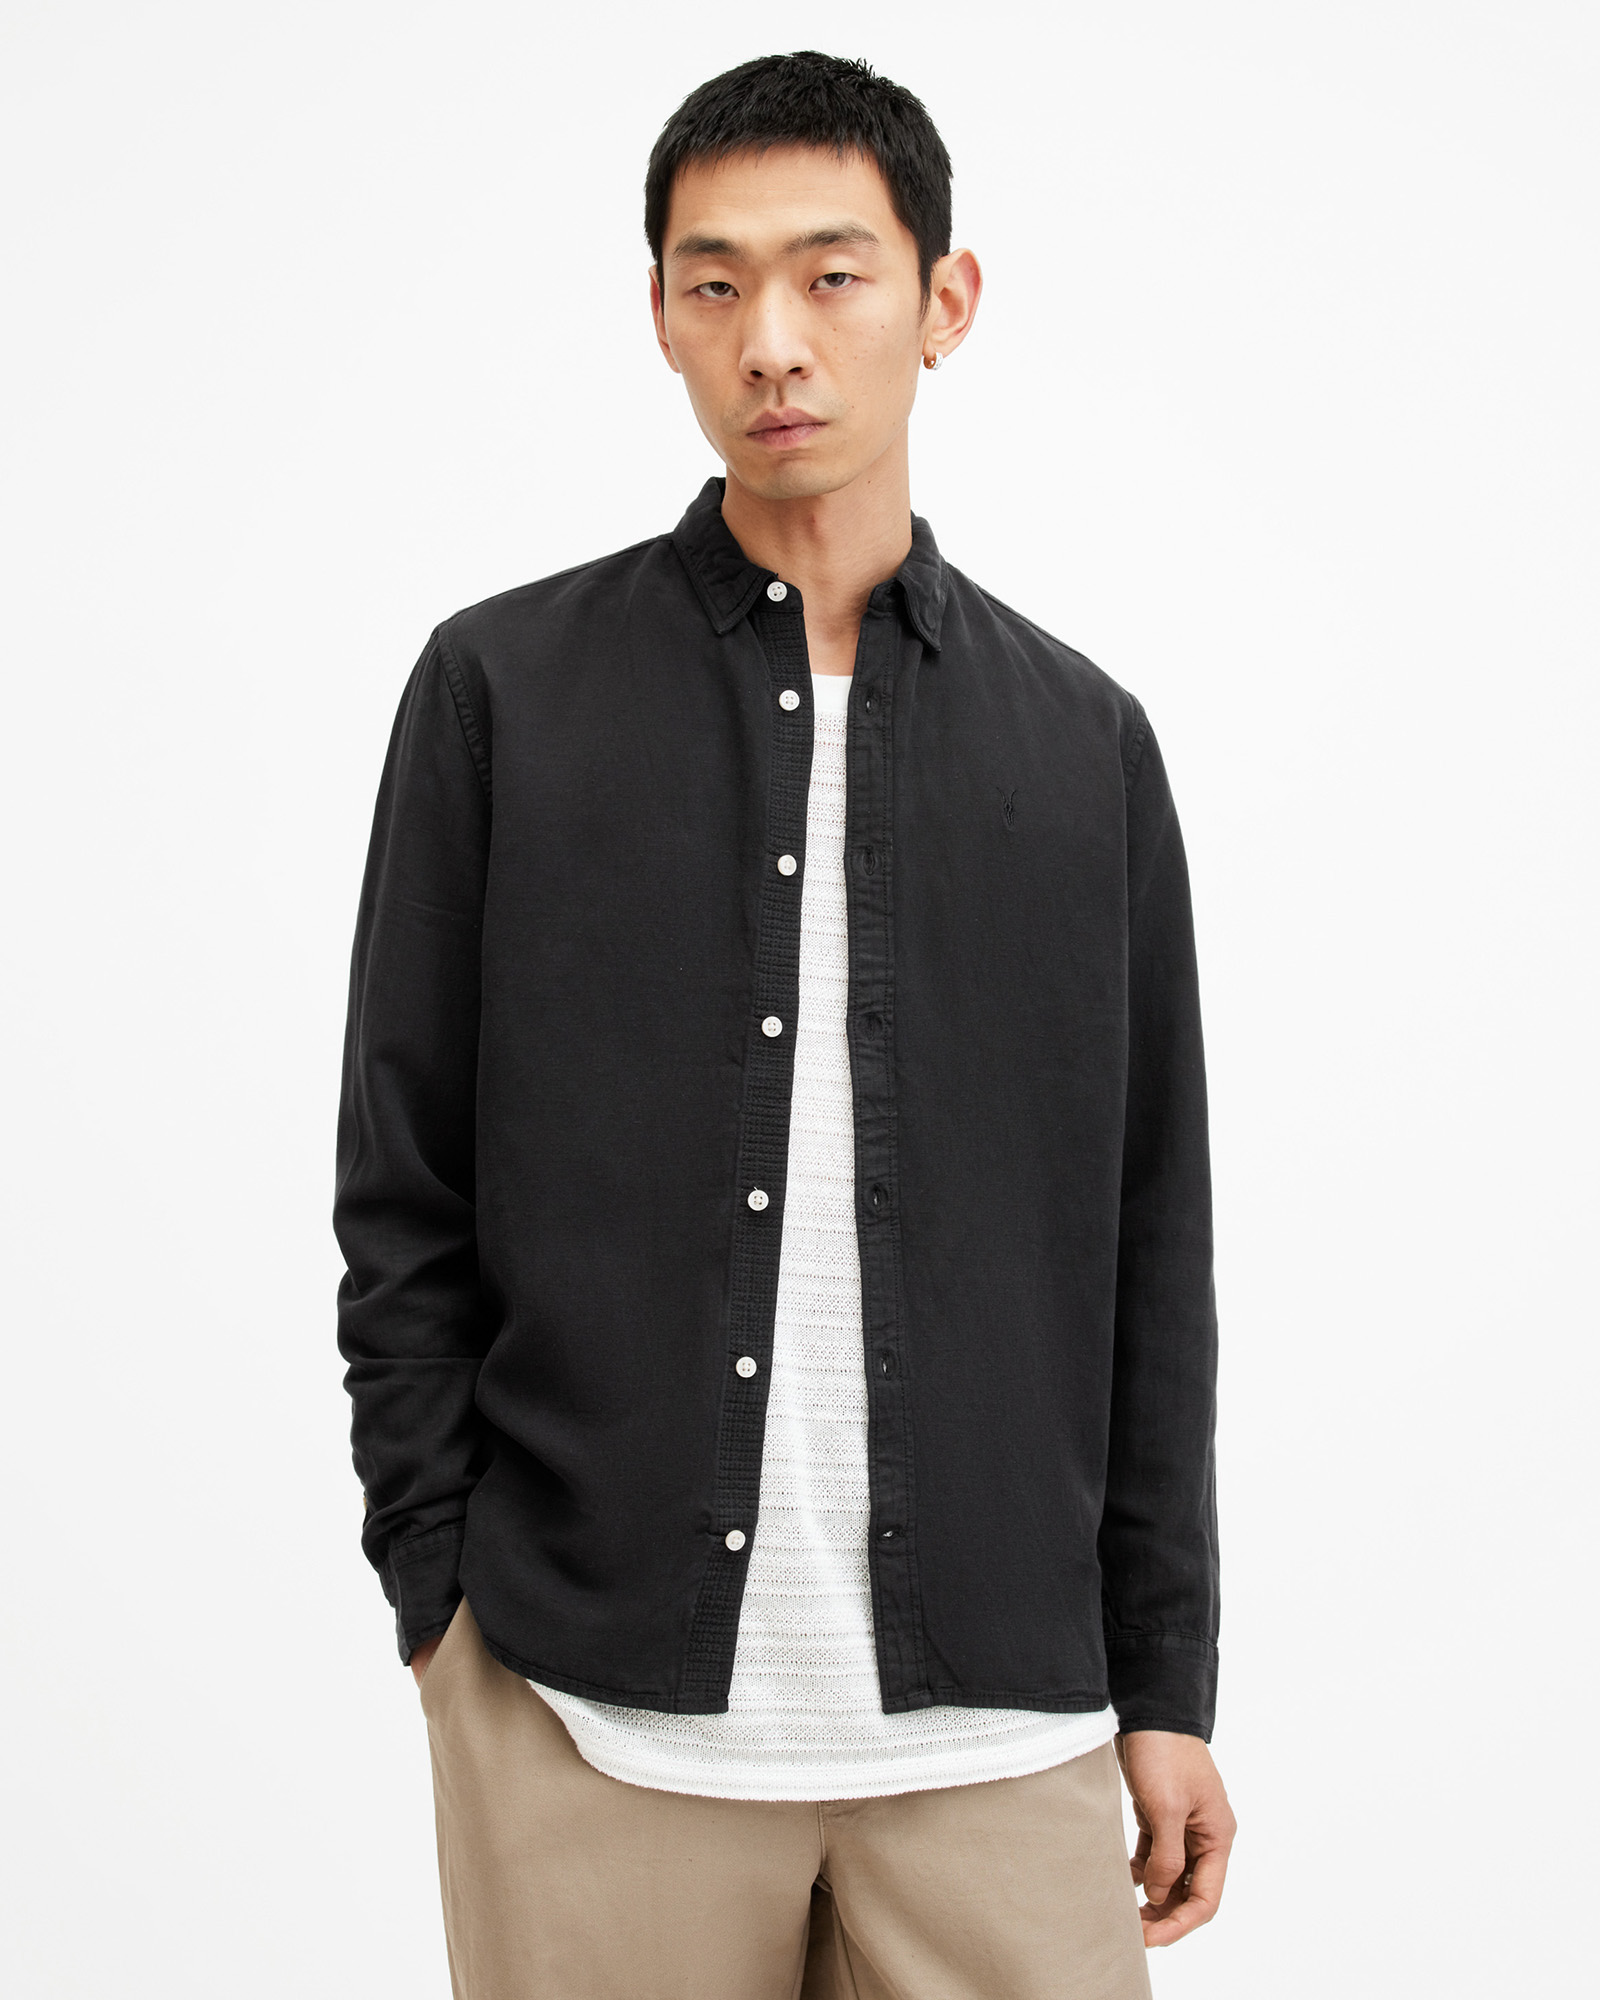 AllSaints Laguna Linen Blend Relaxed Fit Shirt,, Black